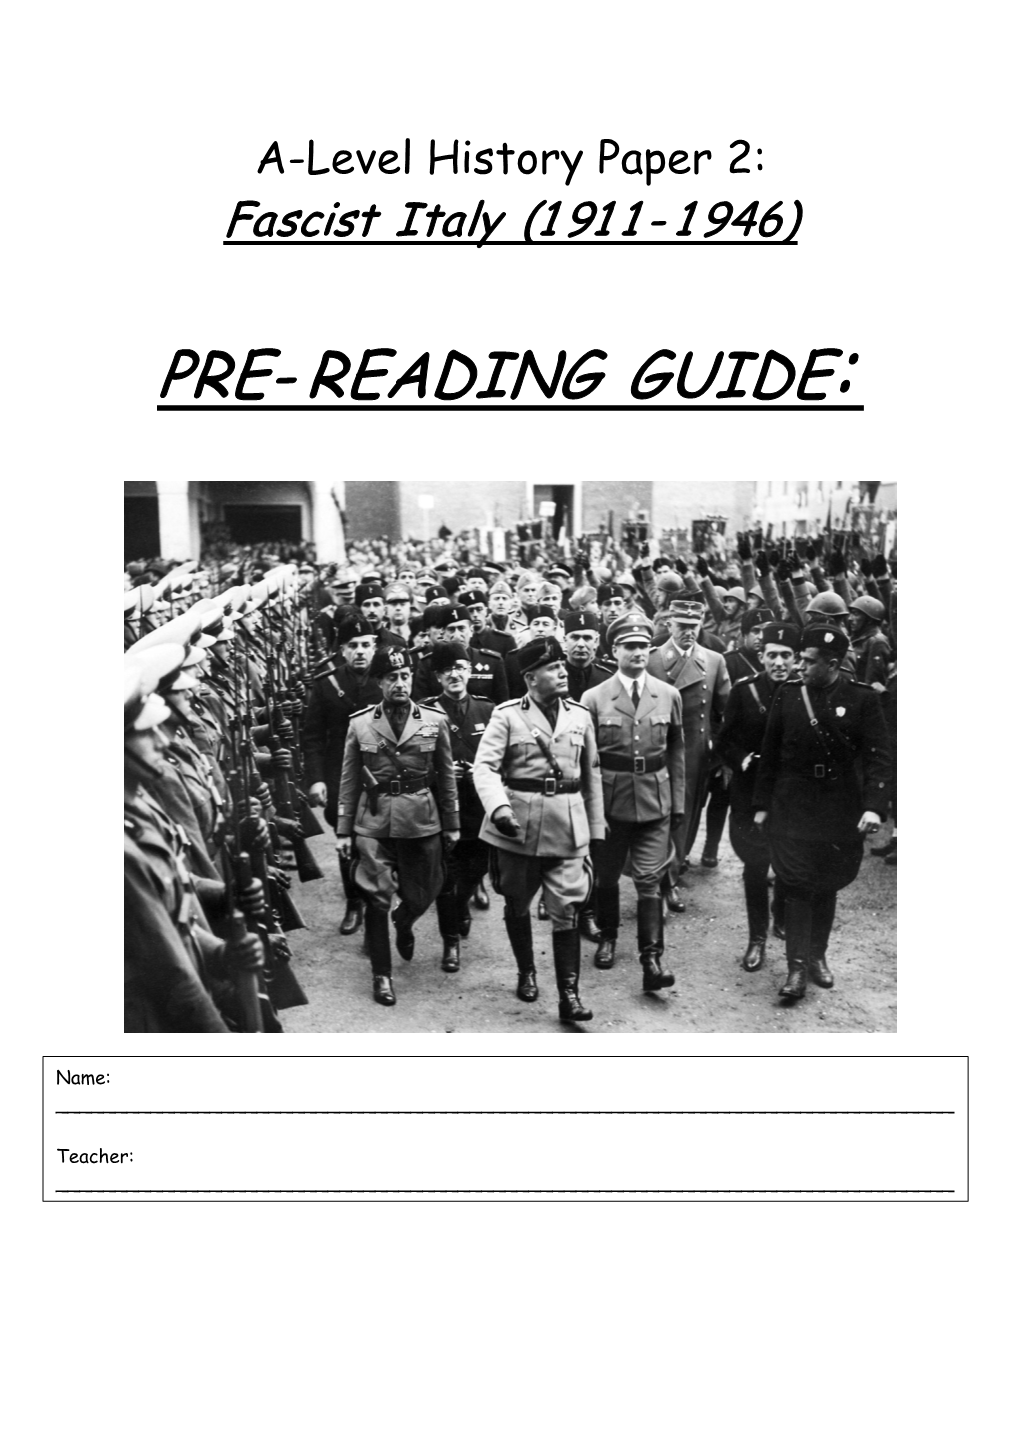 Pre- Reading Guide